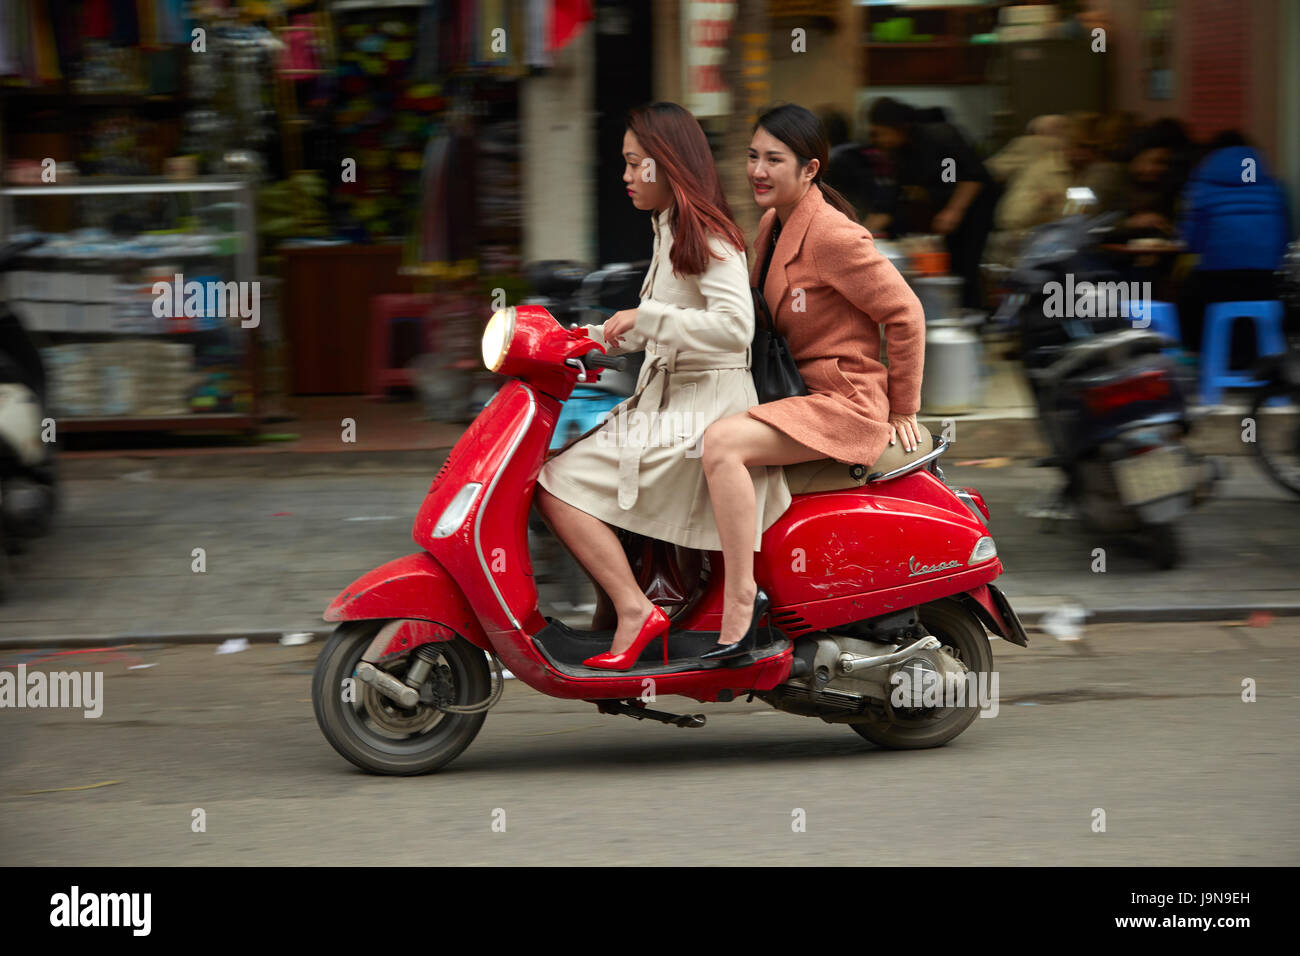 Modebewusste Frauen auf Vespa Roller, Altstadt, Hanoi, Vietnam  Stockfotografie - Alamy